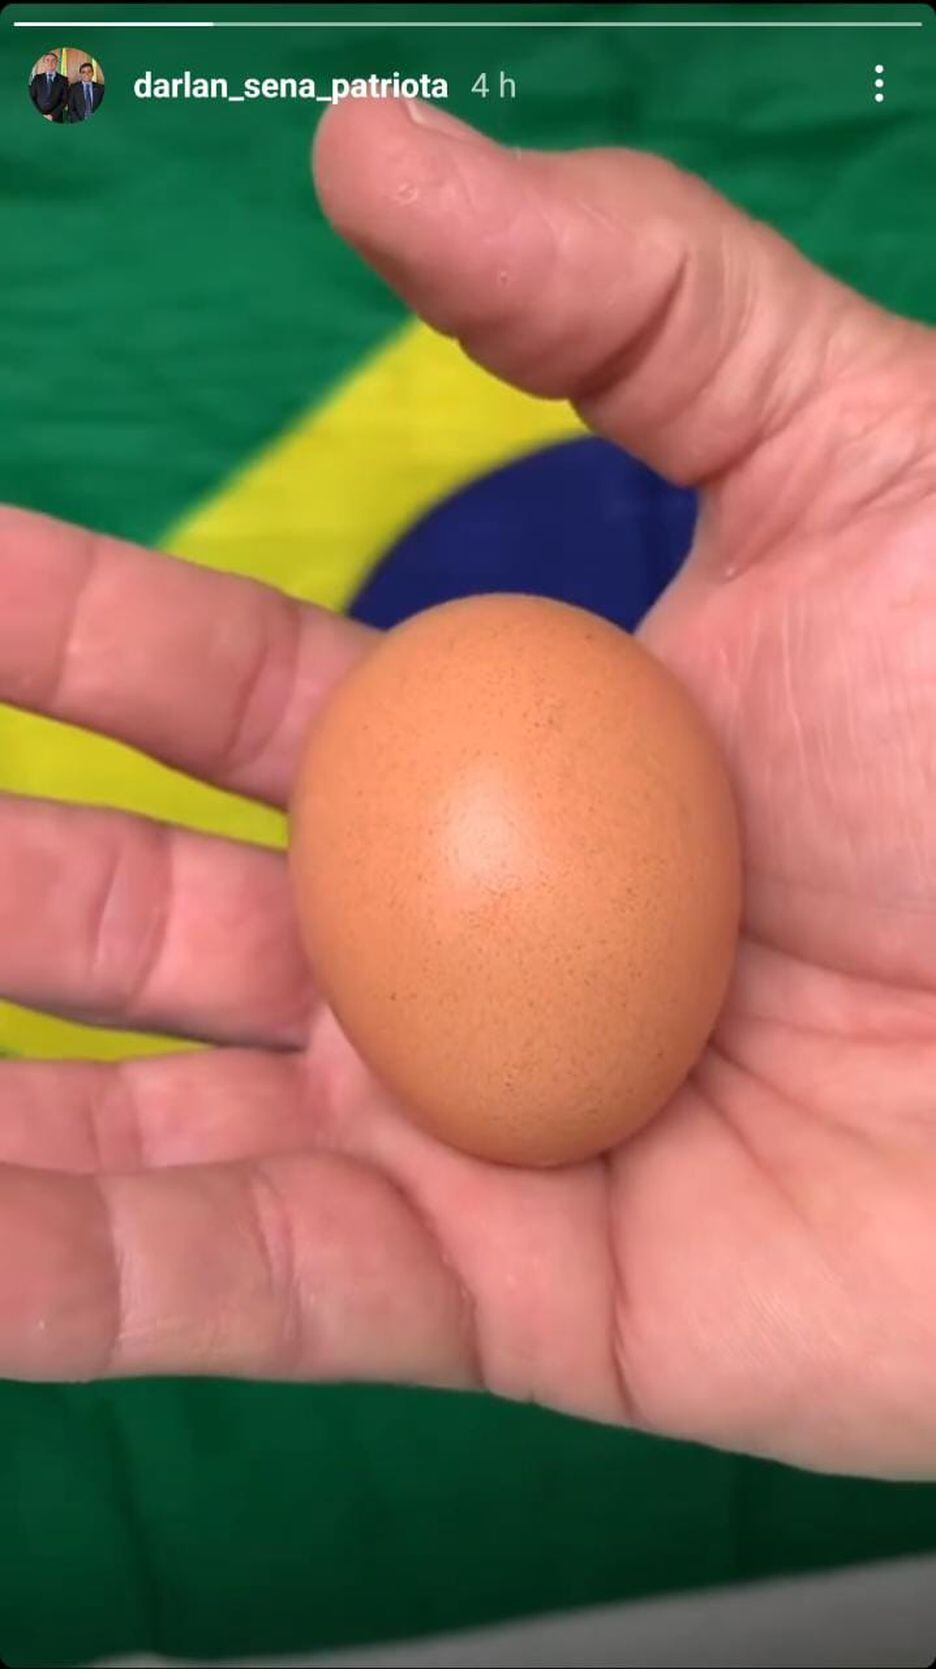 ReproduÃ§Ã£o de rede social de Darlan Sena, de trecho de vÃ­deo em que ele quebra um ovo e faz referÃªncia a Alexandre de Moraes.